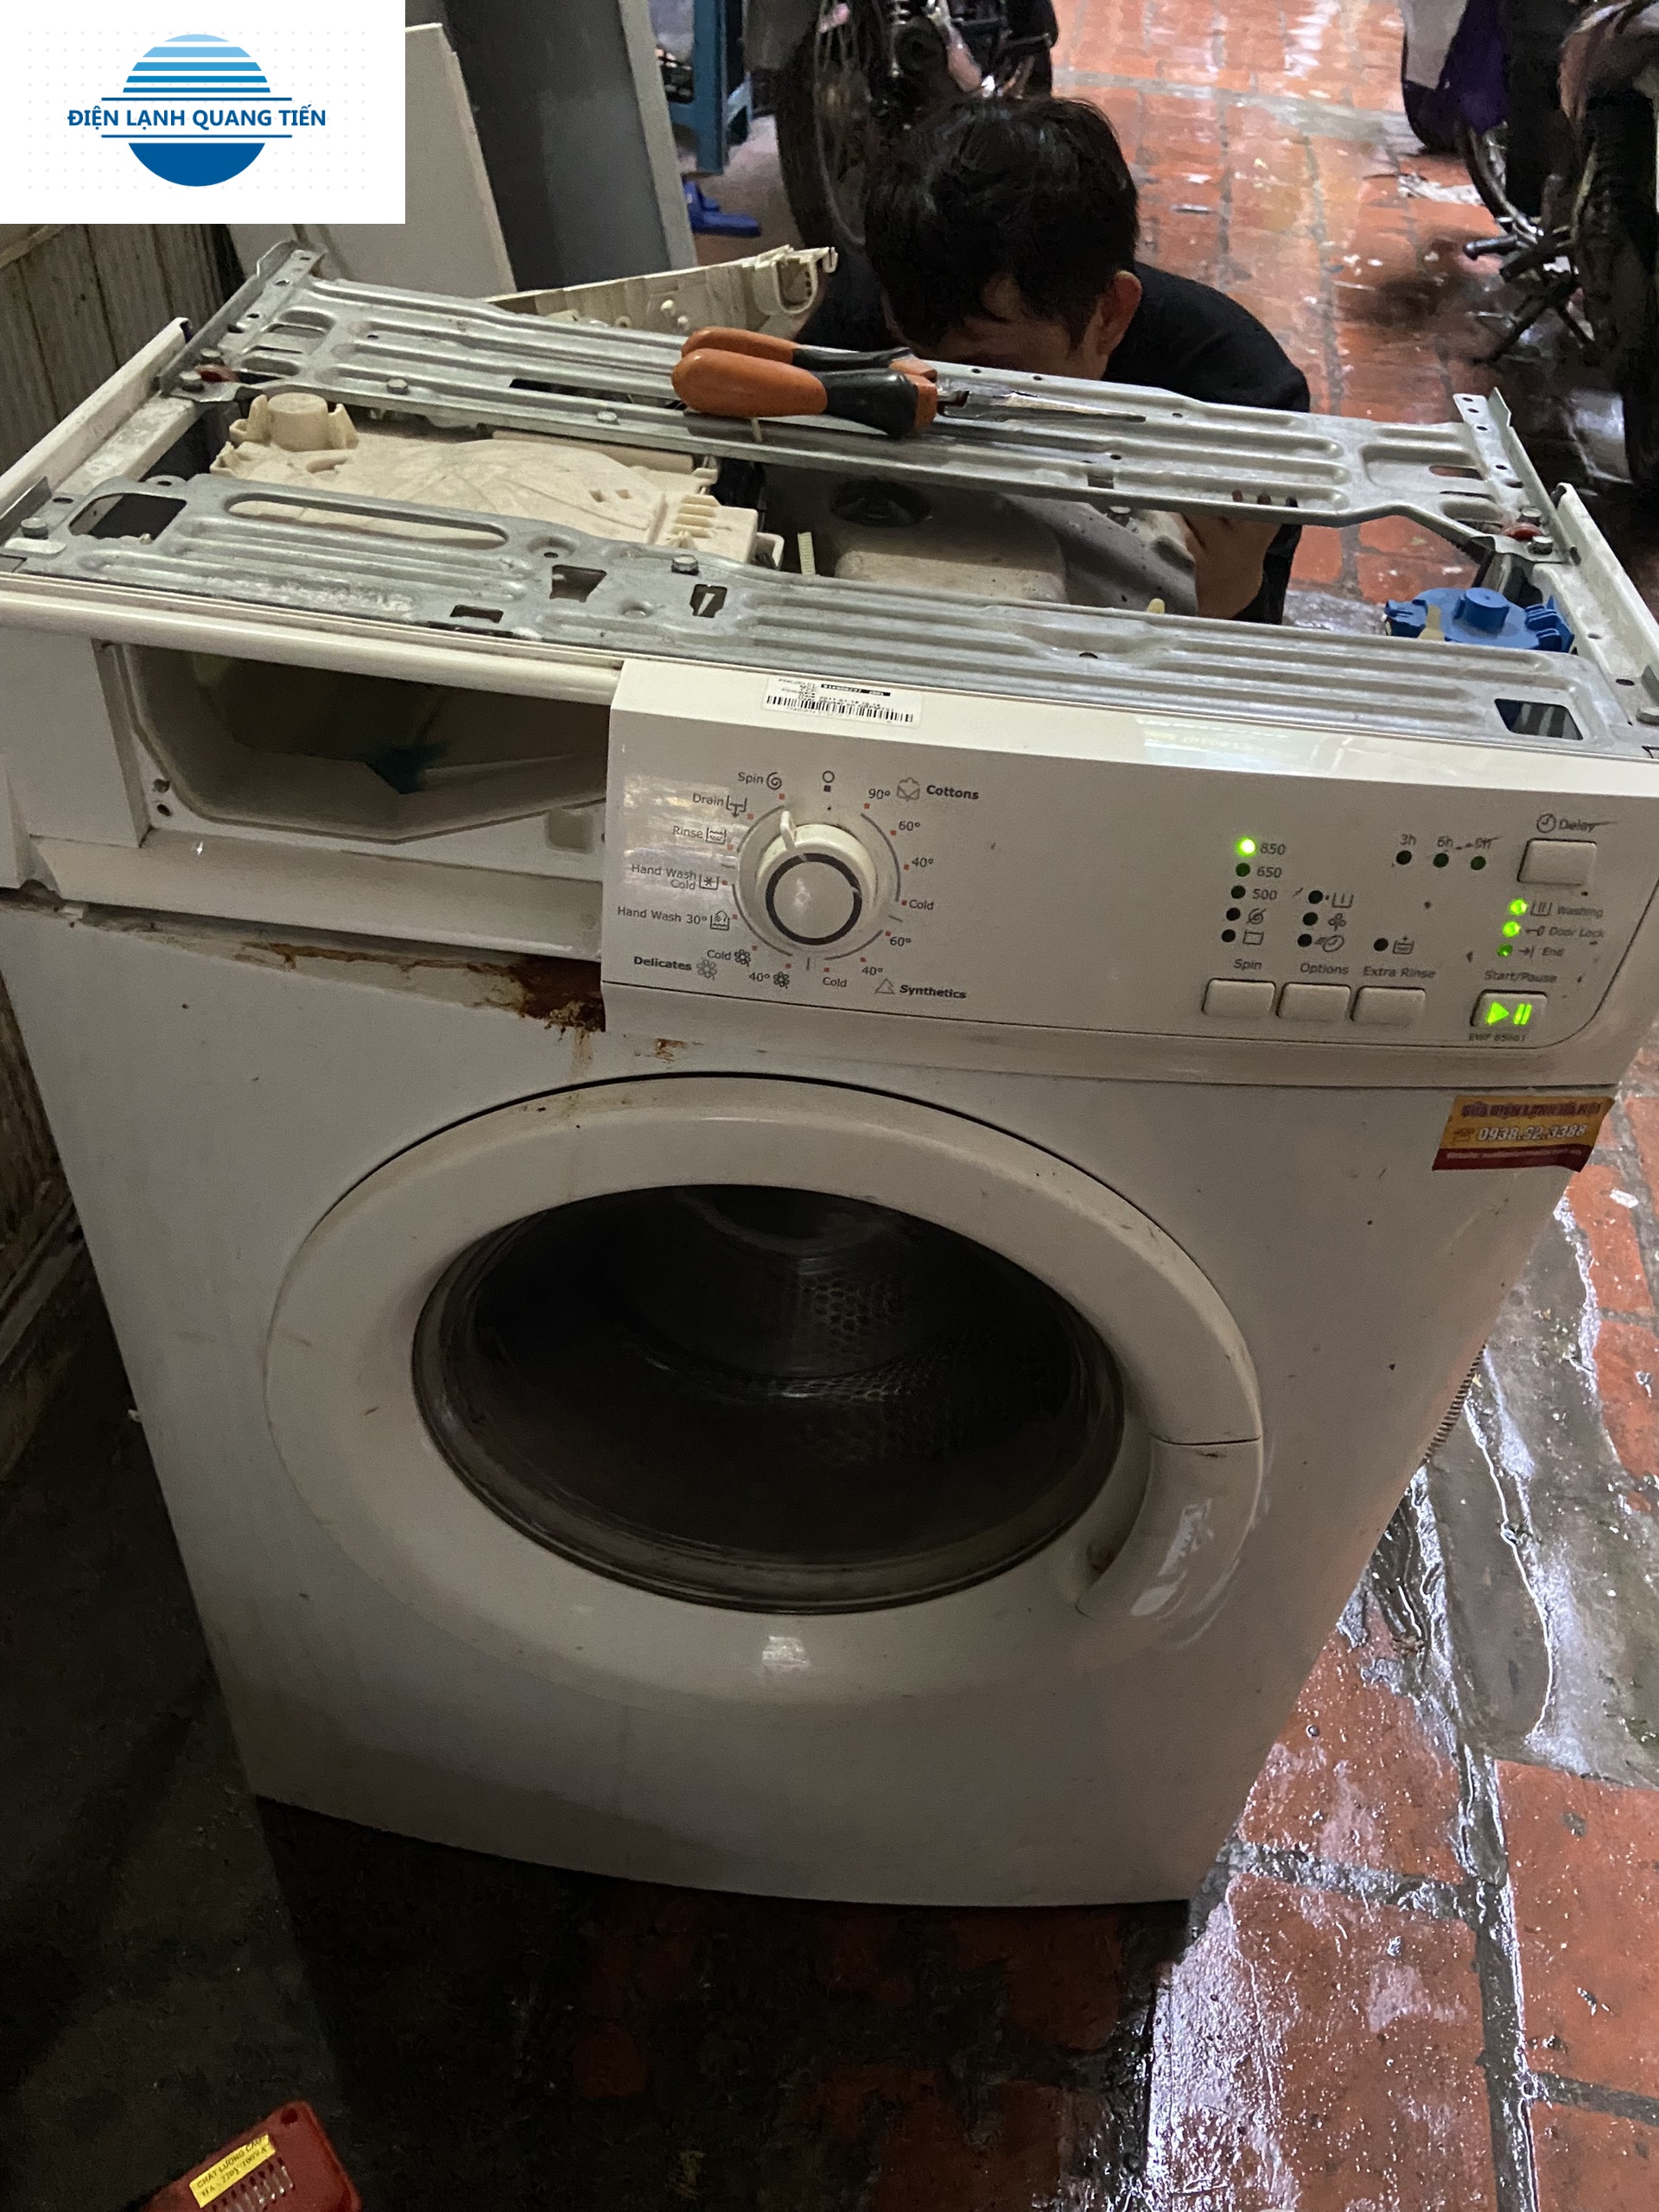 Thu mua máy giặt cũ hỏng hóc